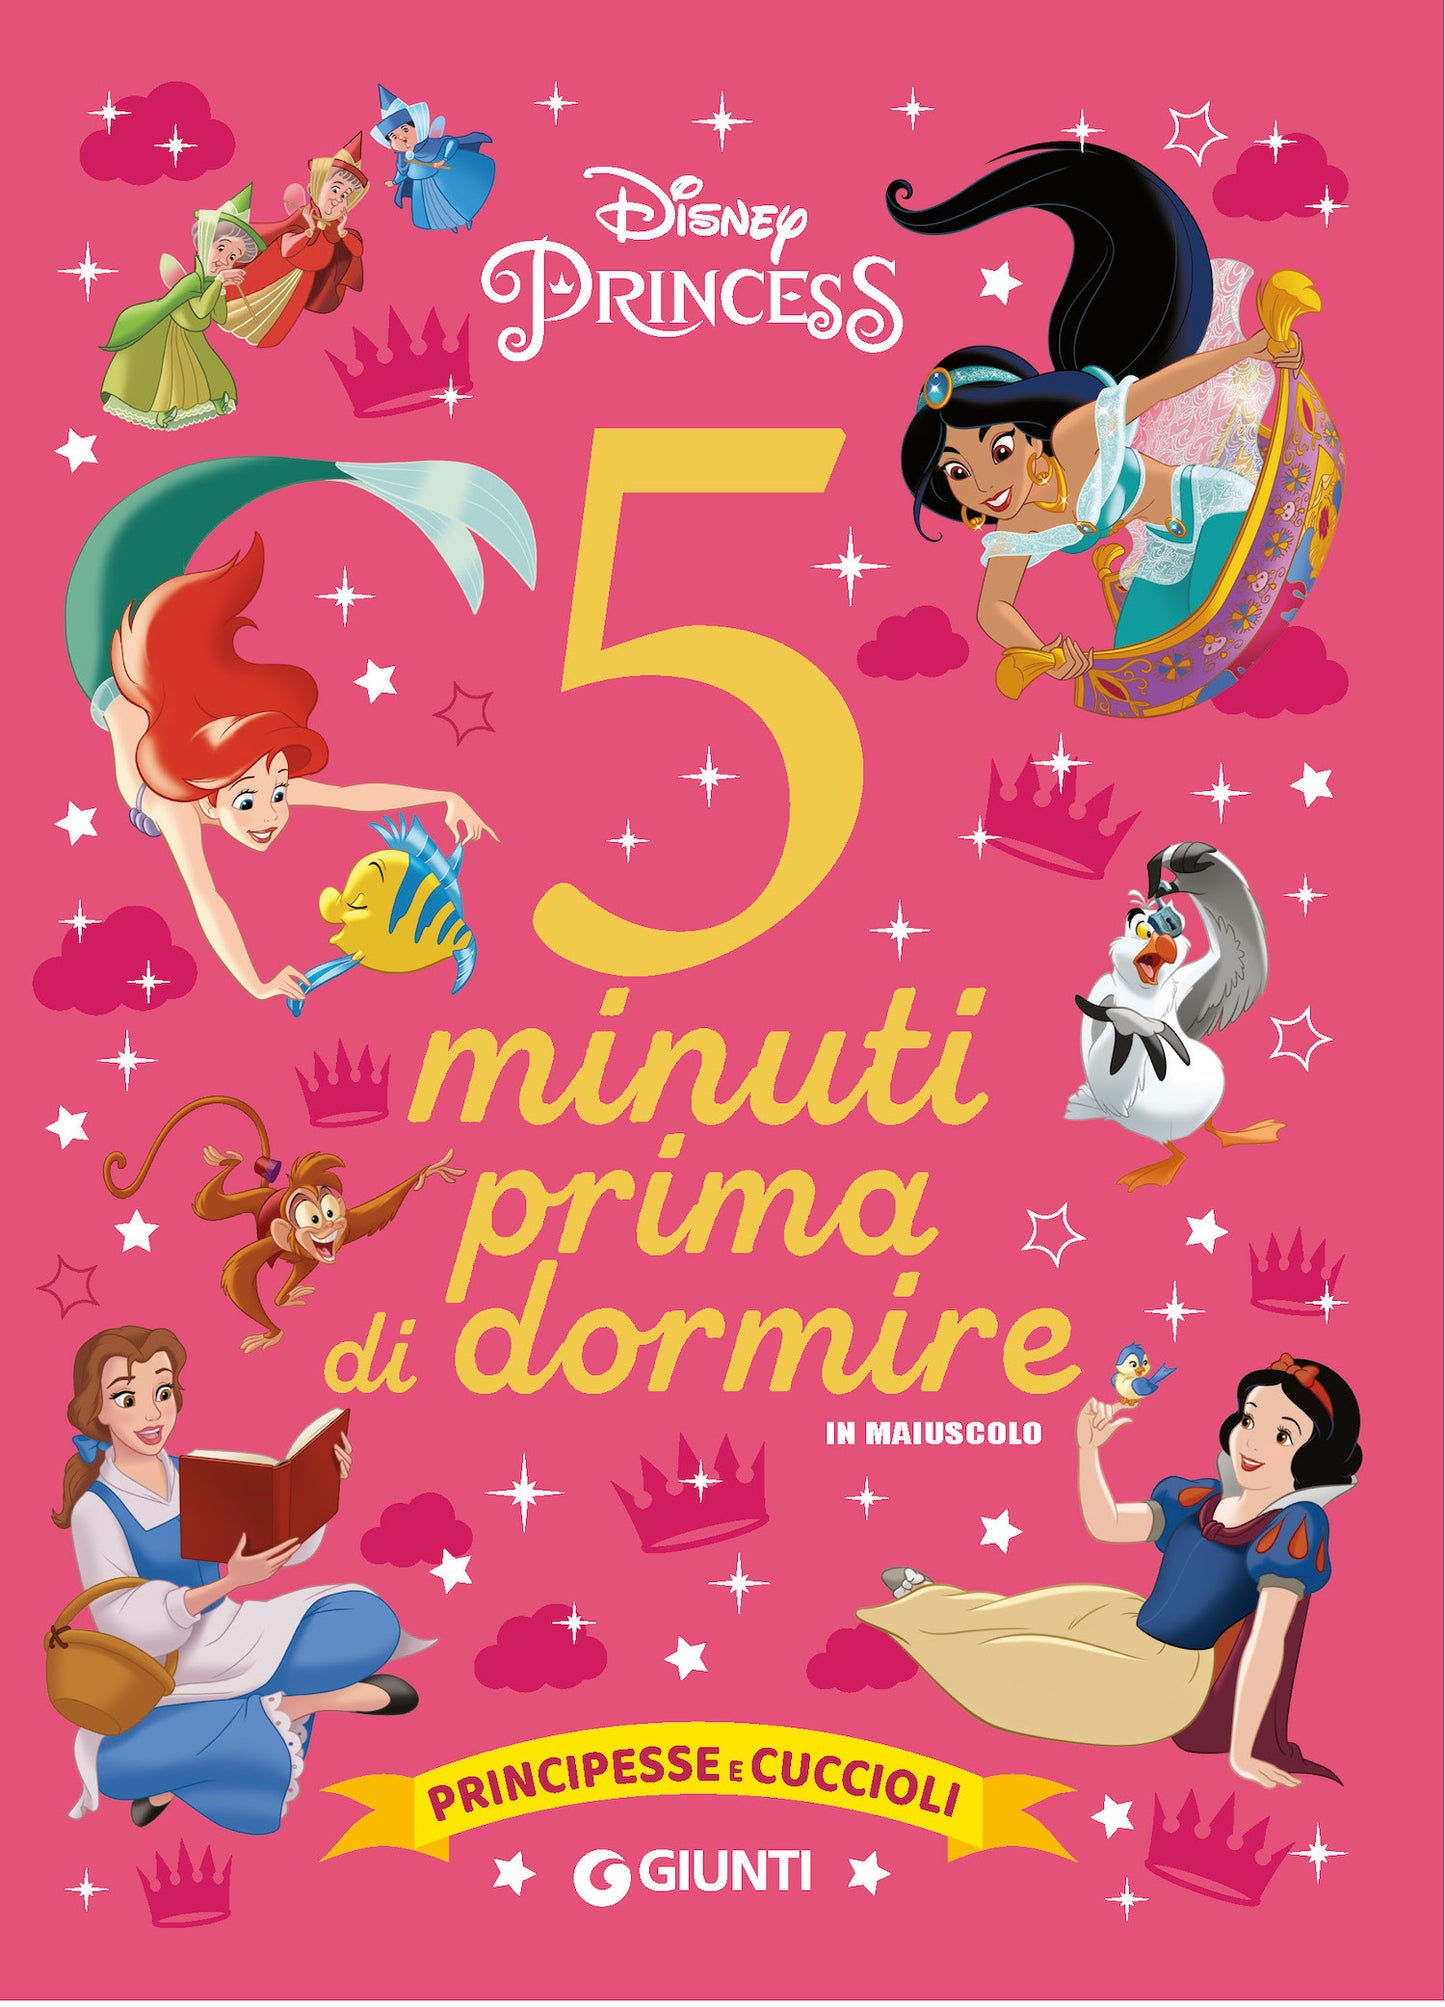 Principesse Disney 5 minuti prima di dormire - in maiuscolo. Principesse e cuccioli